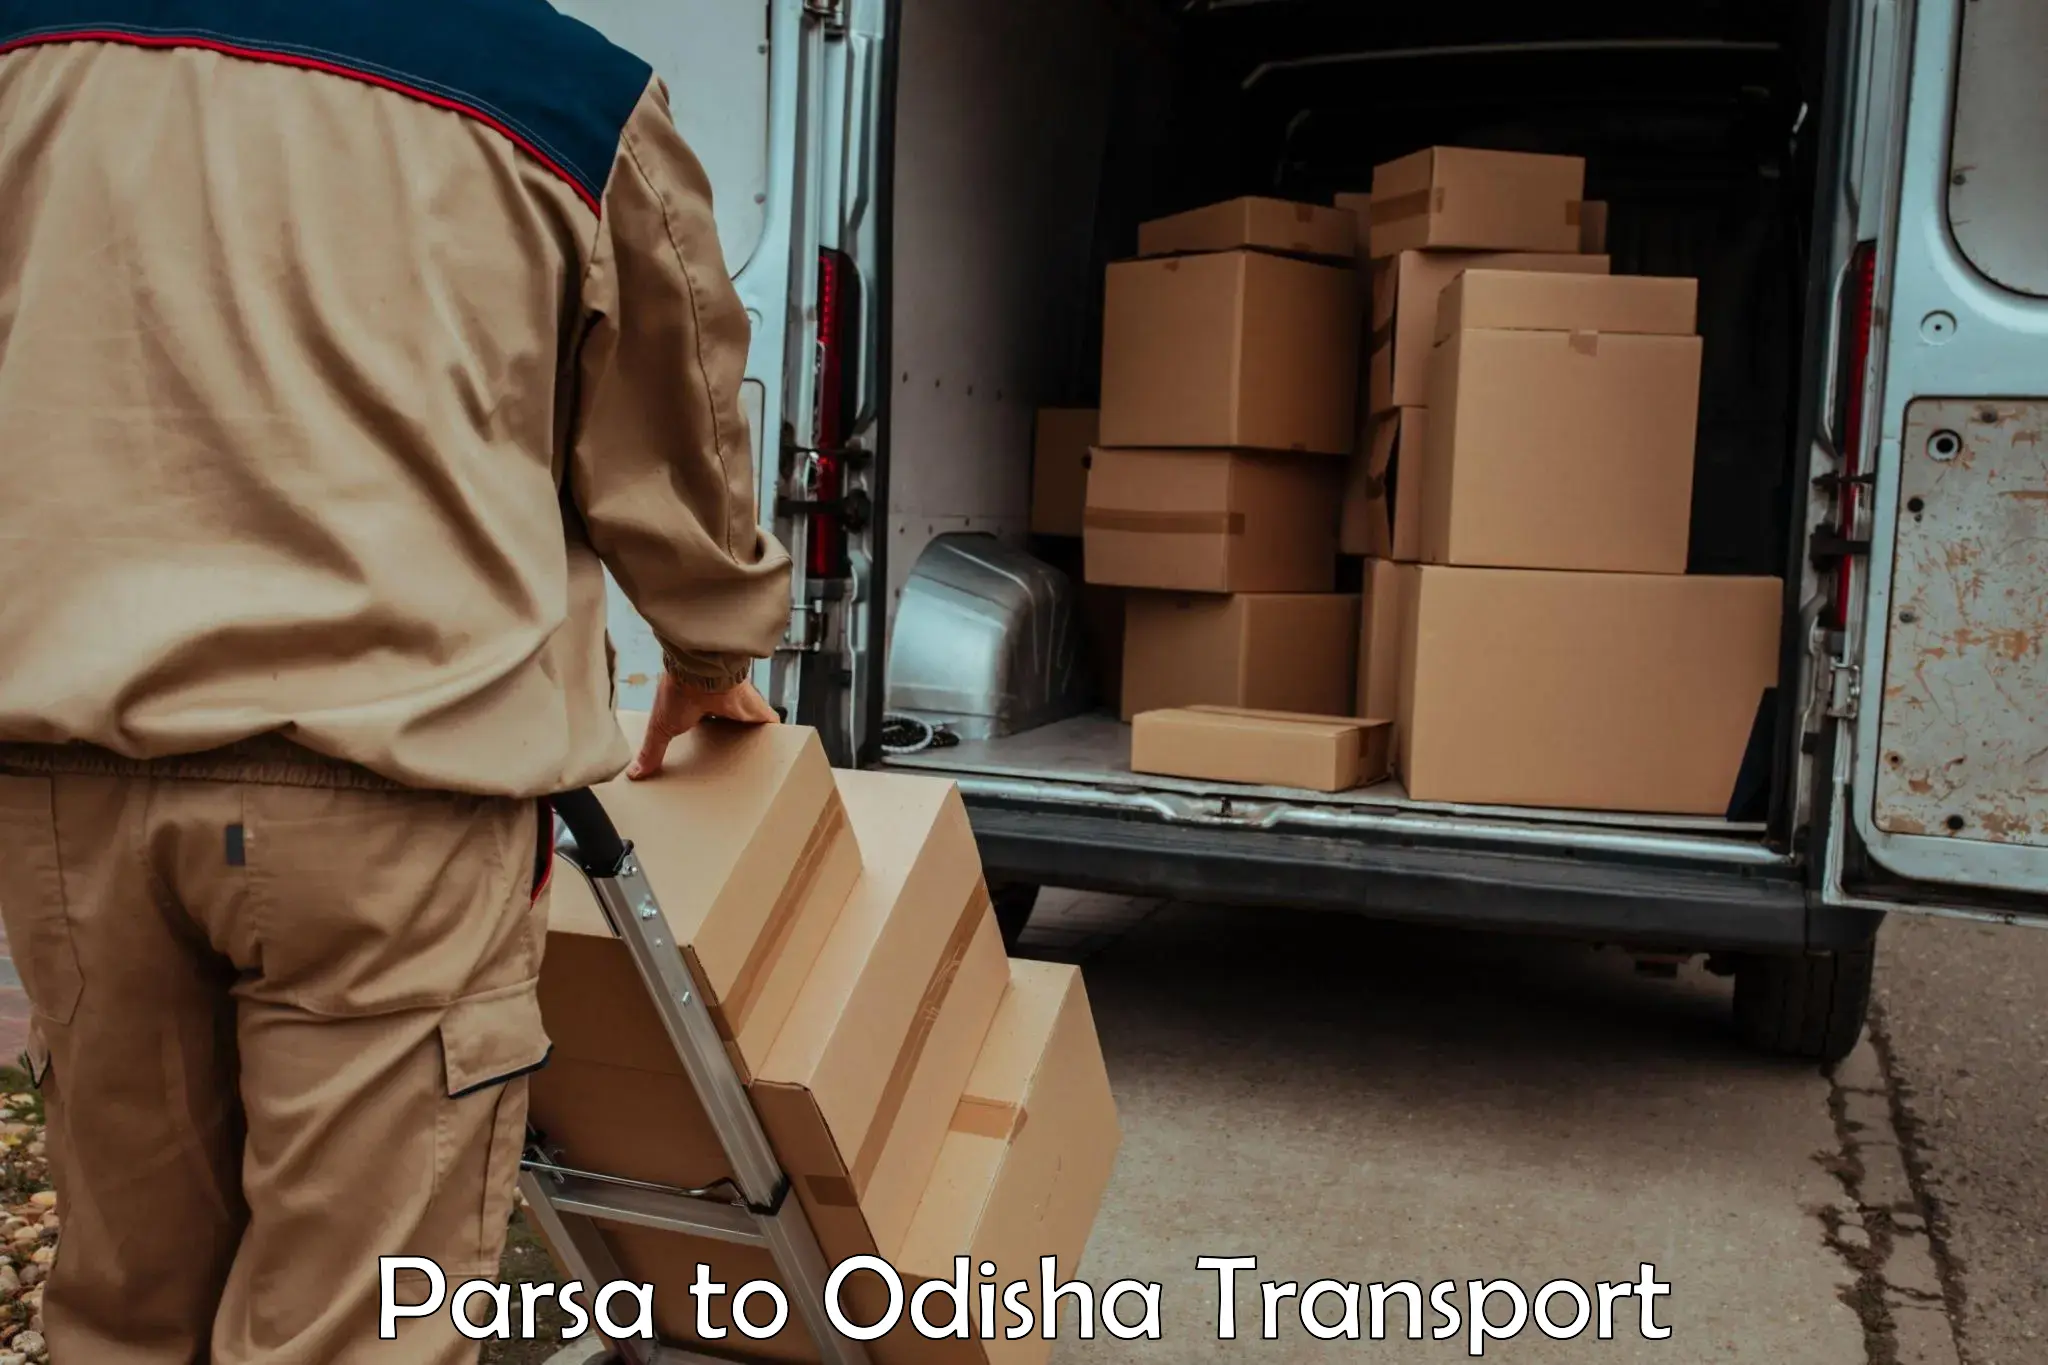 Daily transport service Parsa to Melchhamunda